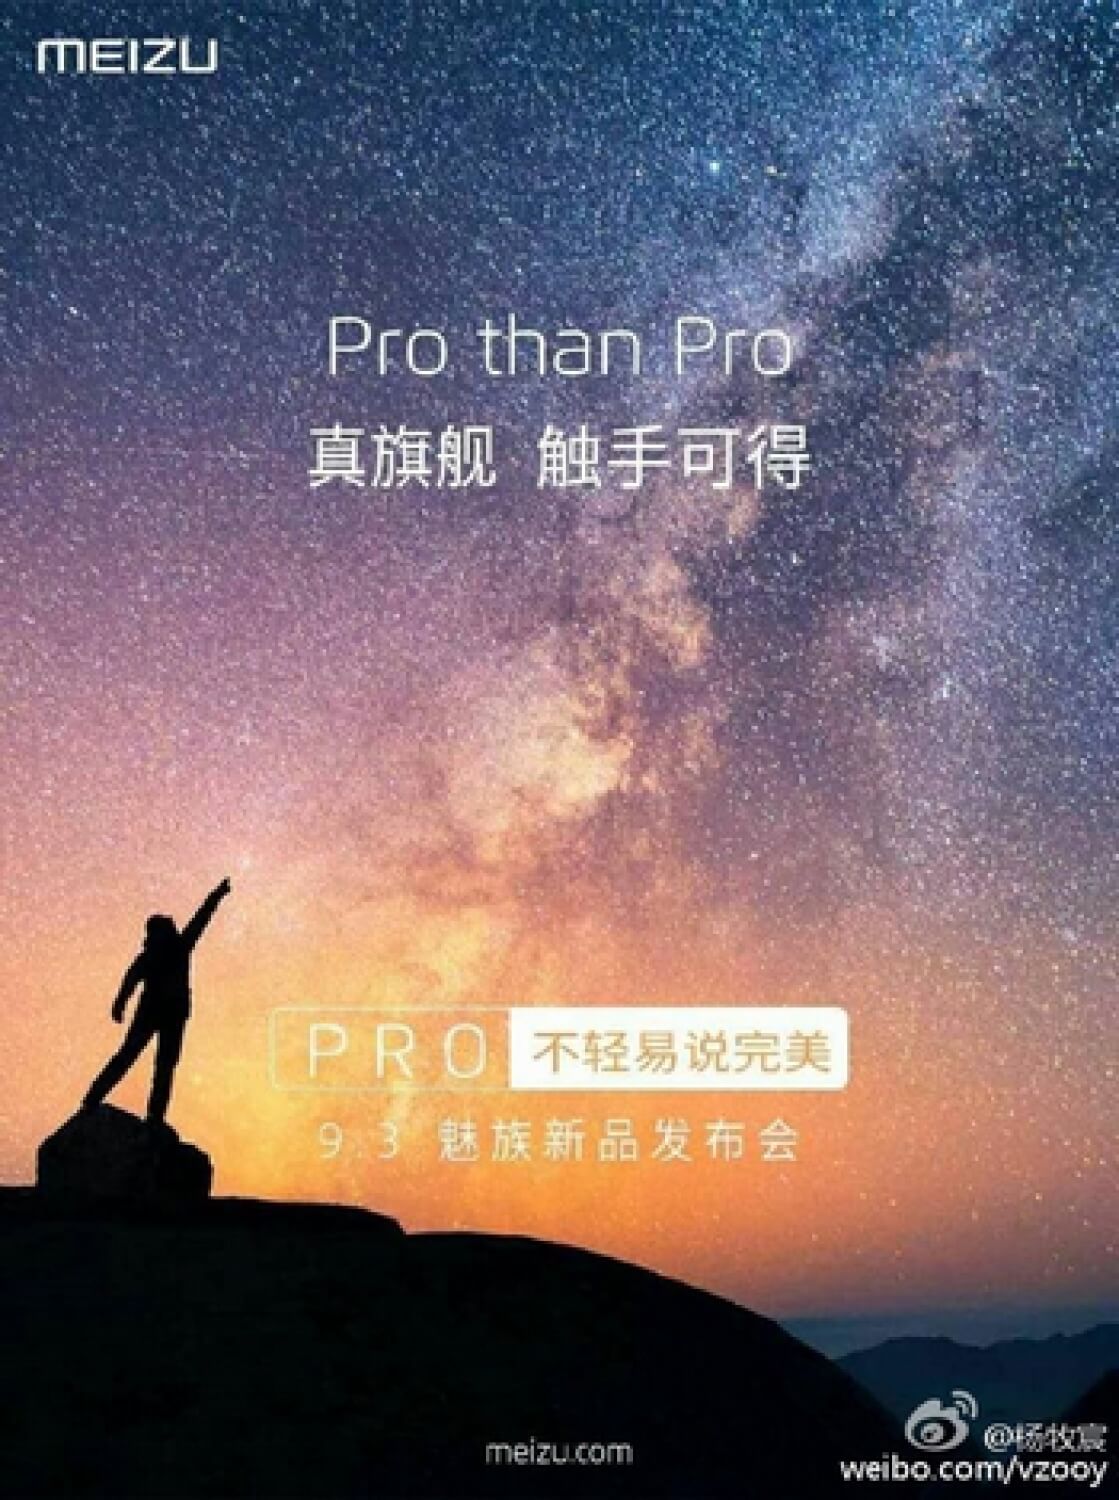 «Больше, чем Pro»: Meizu готова удивлять. Фото.